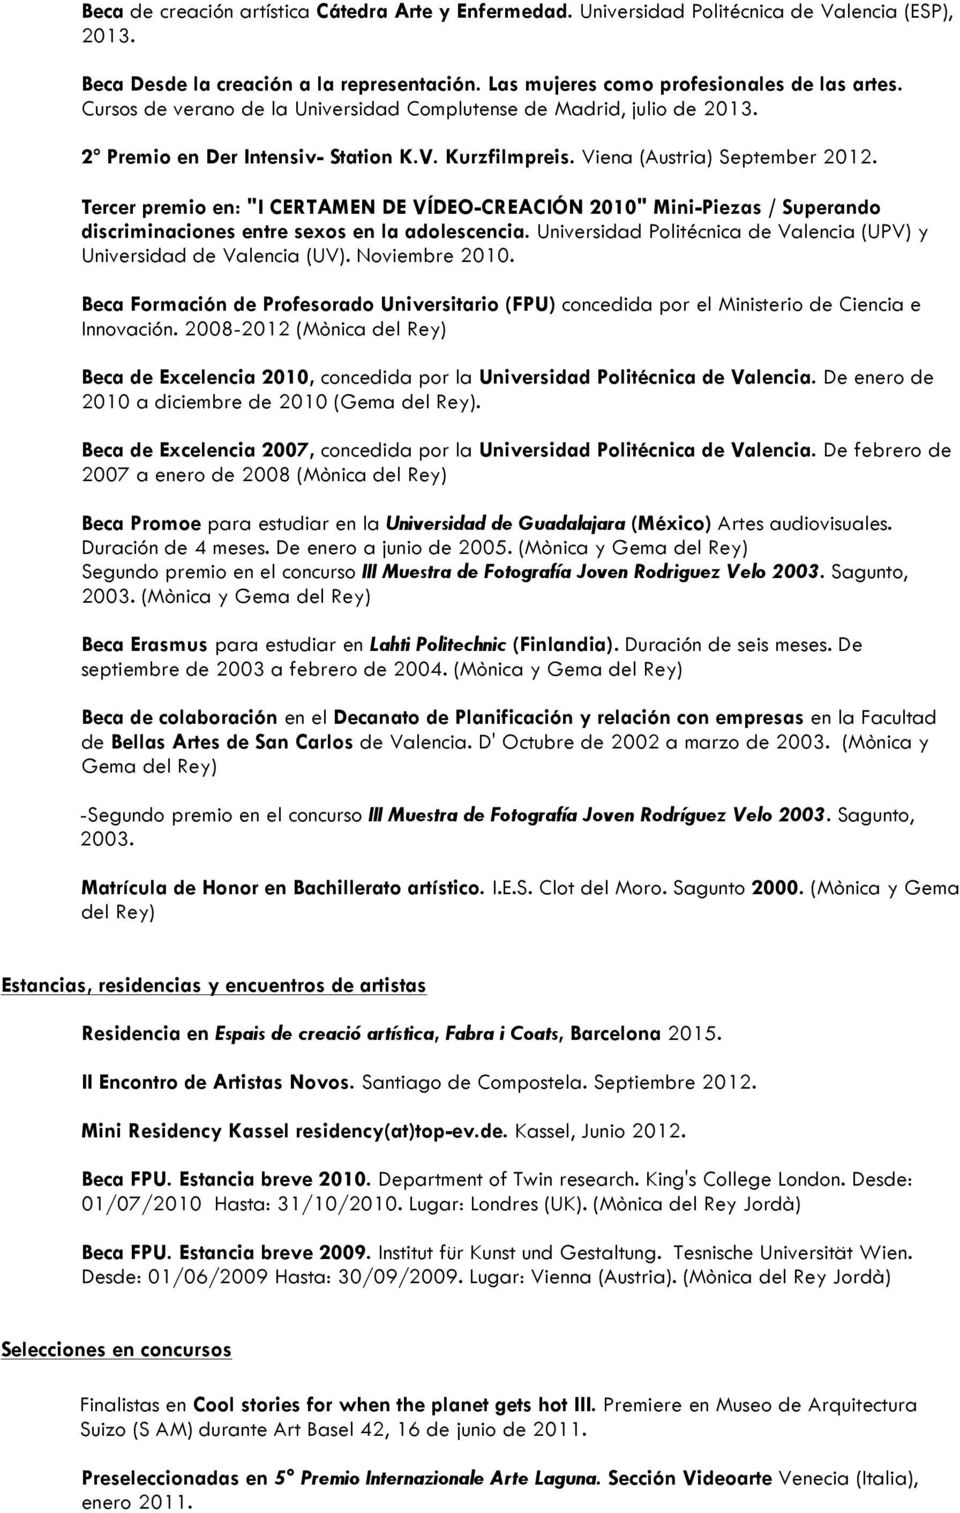 Tercer premio en: "I CERTAMEN DE VÍDEO-CREACIÓN 2010" Mini-Piezas / Superando discriminaciones entre sexos en la adolescencia. Universidad Politécnica de Valencia (UPV) y Universidad de Valencia (UV).